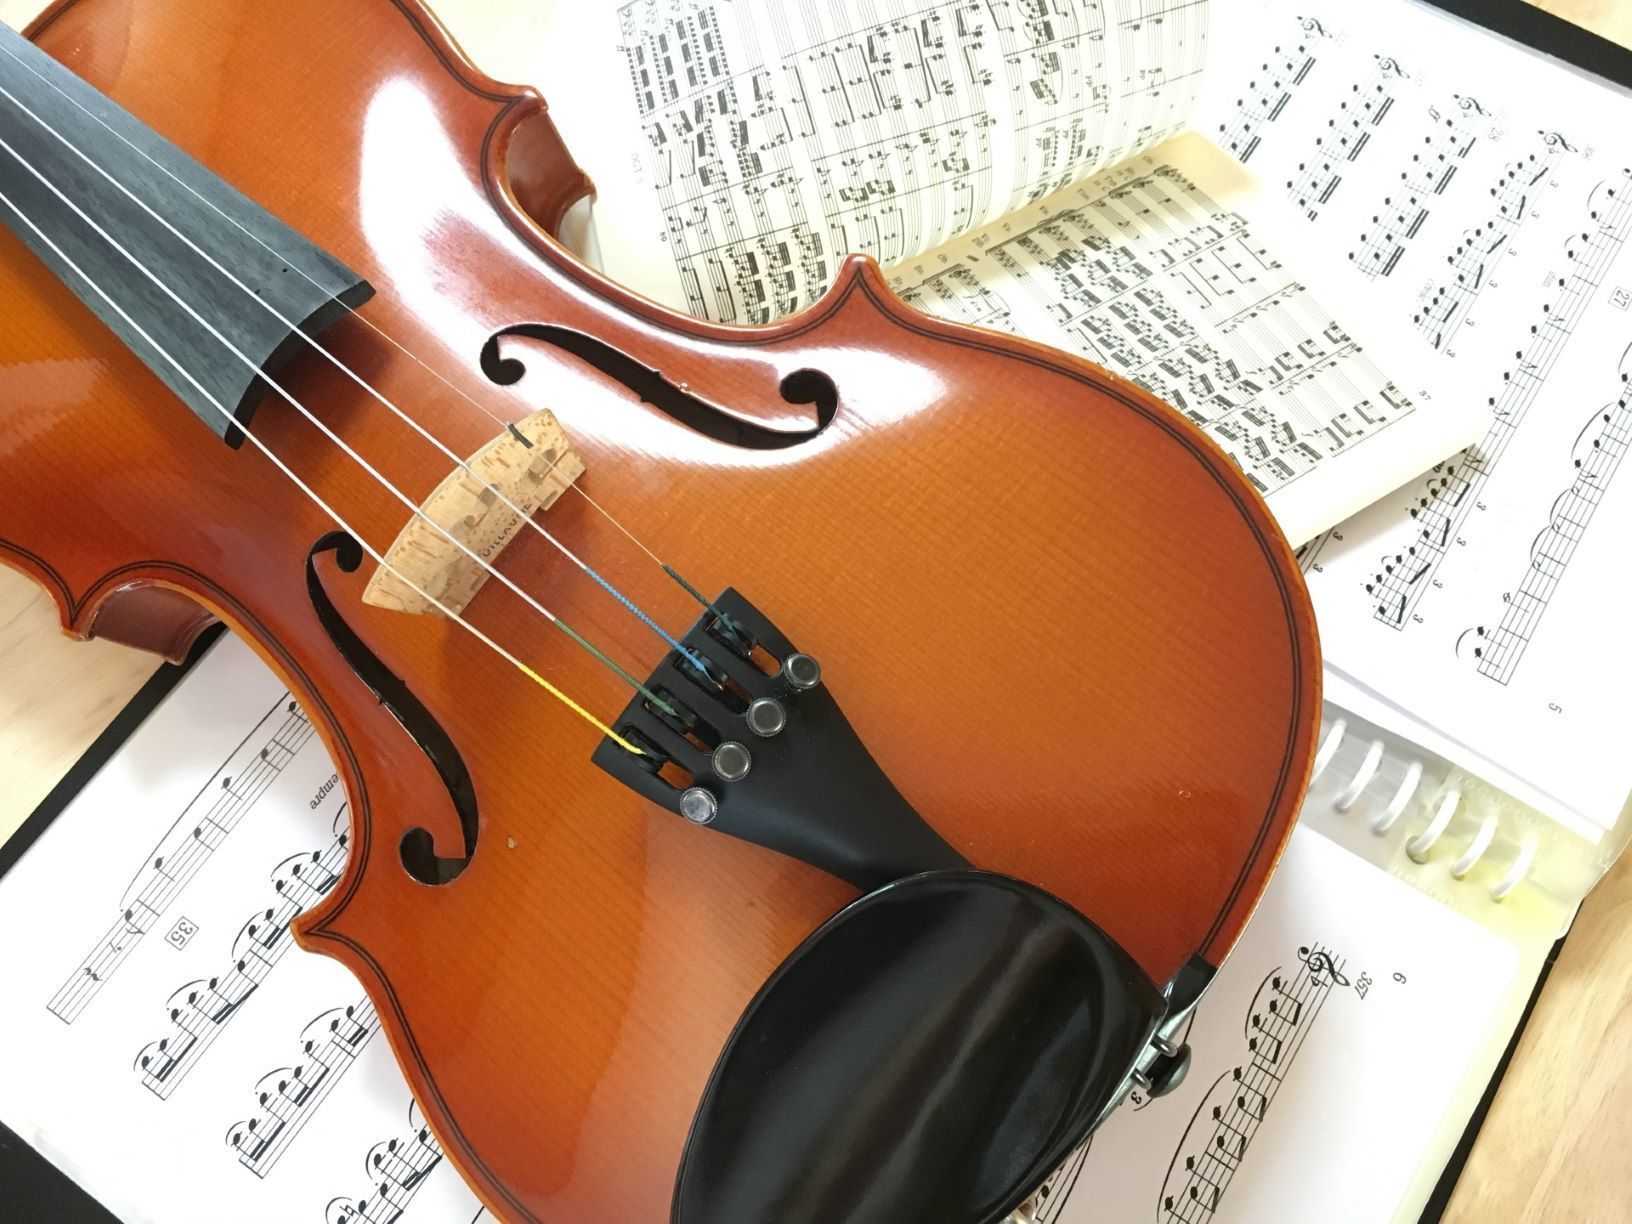 カワイ音楽教室のバイオリンコースは丁寧な指導で子どもでも安心 